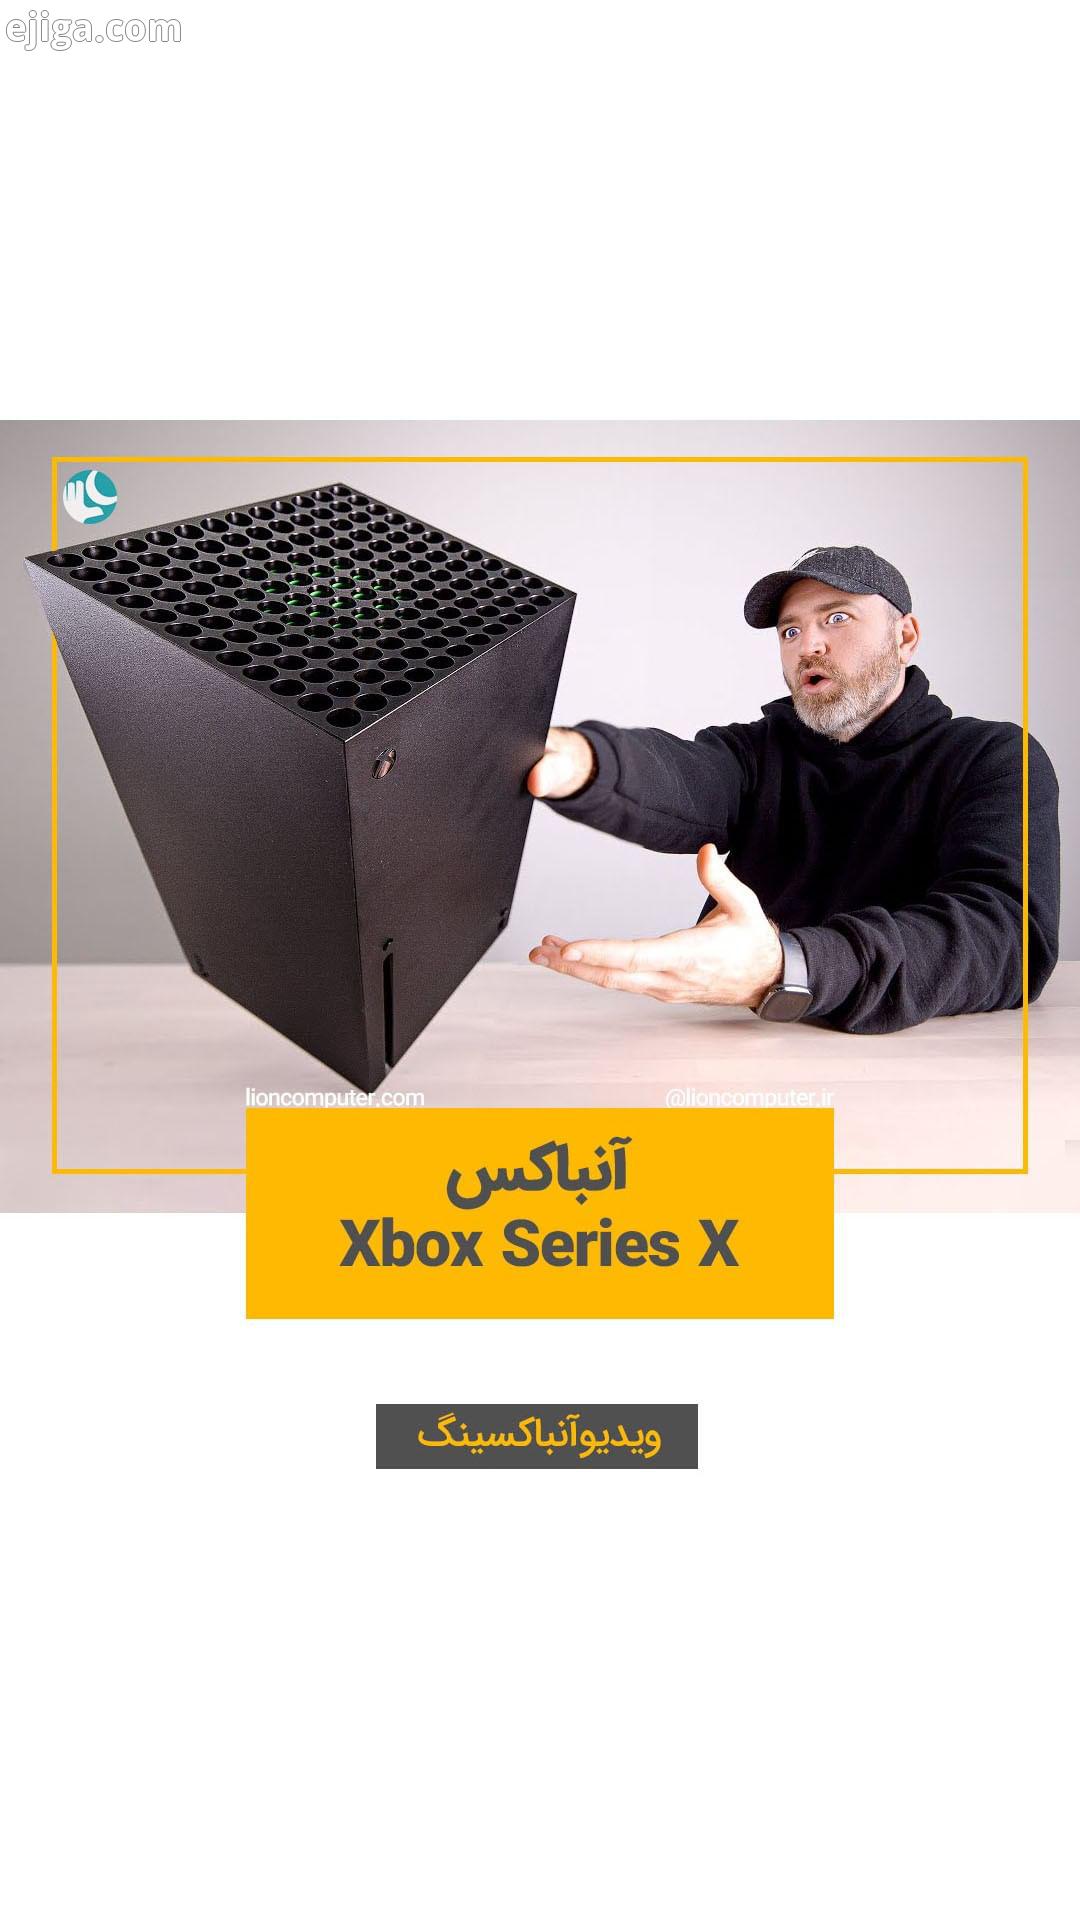 ..آنباکسینگ Xbox Series.: Unbox Therapy به اشتراک بذار...لیون کامپیوتر کامپیوتر سخت افزار گیم گیمر